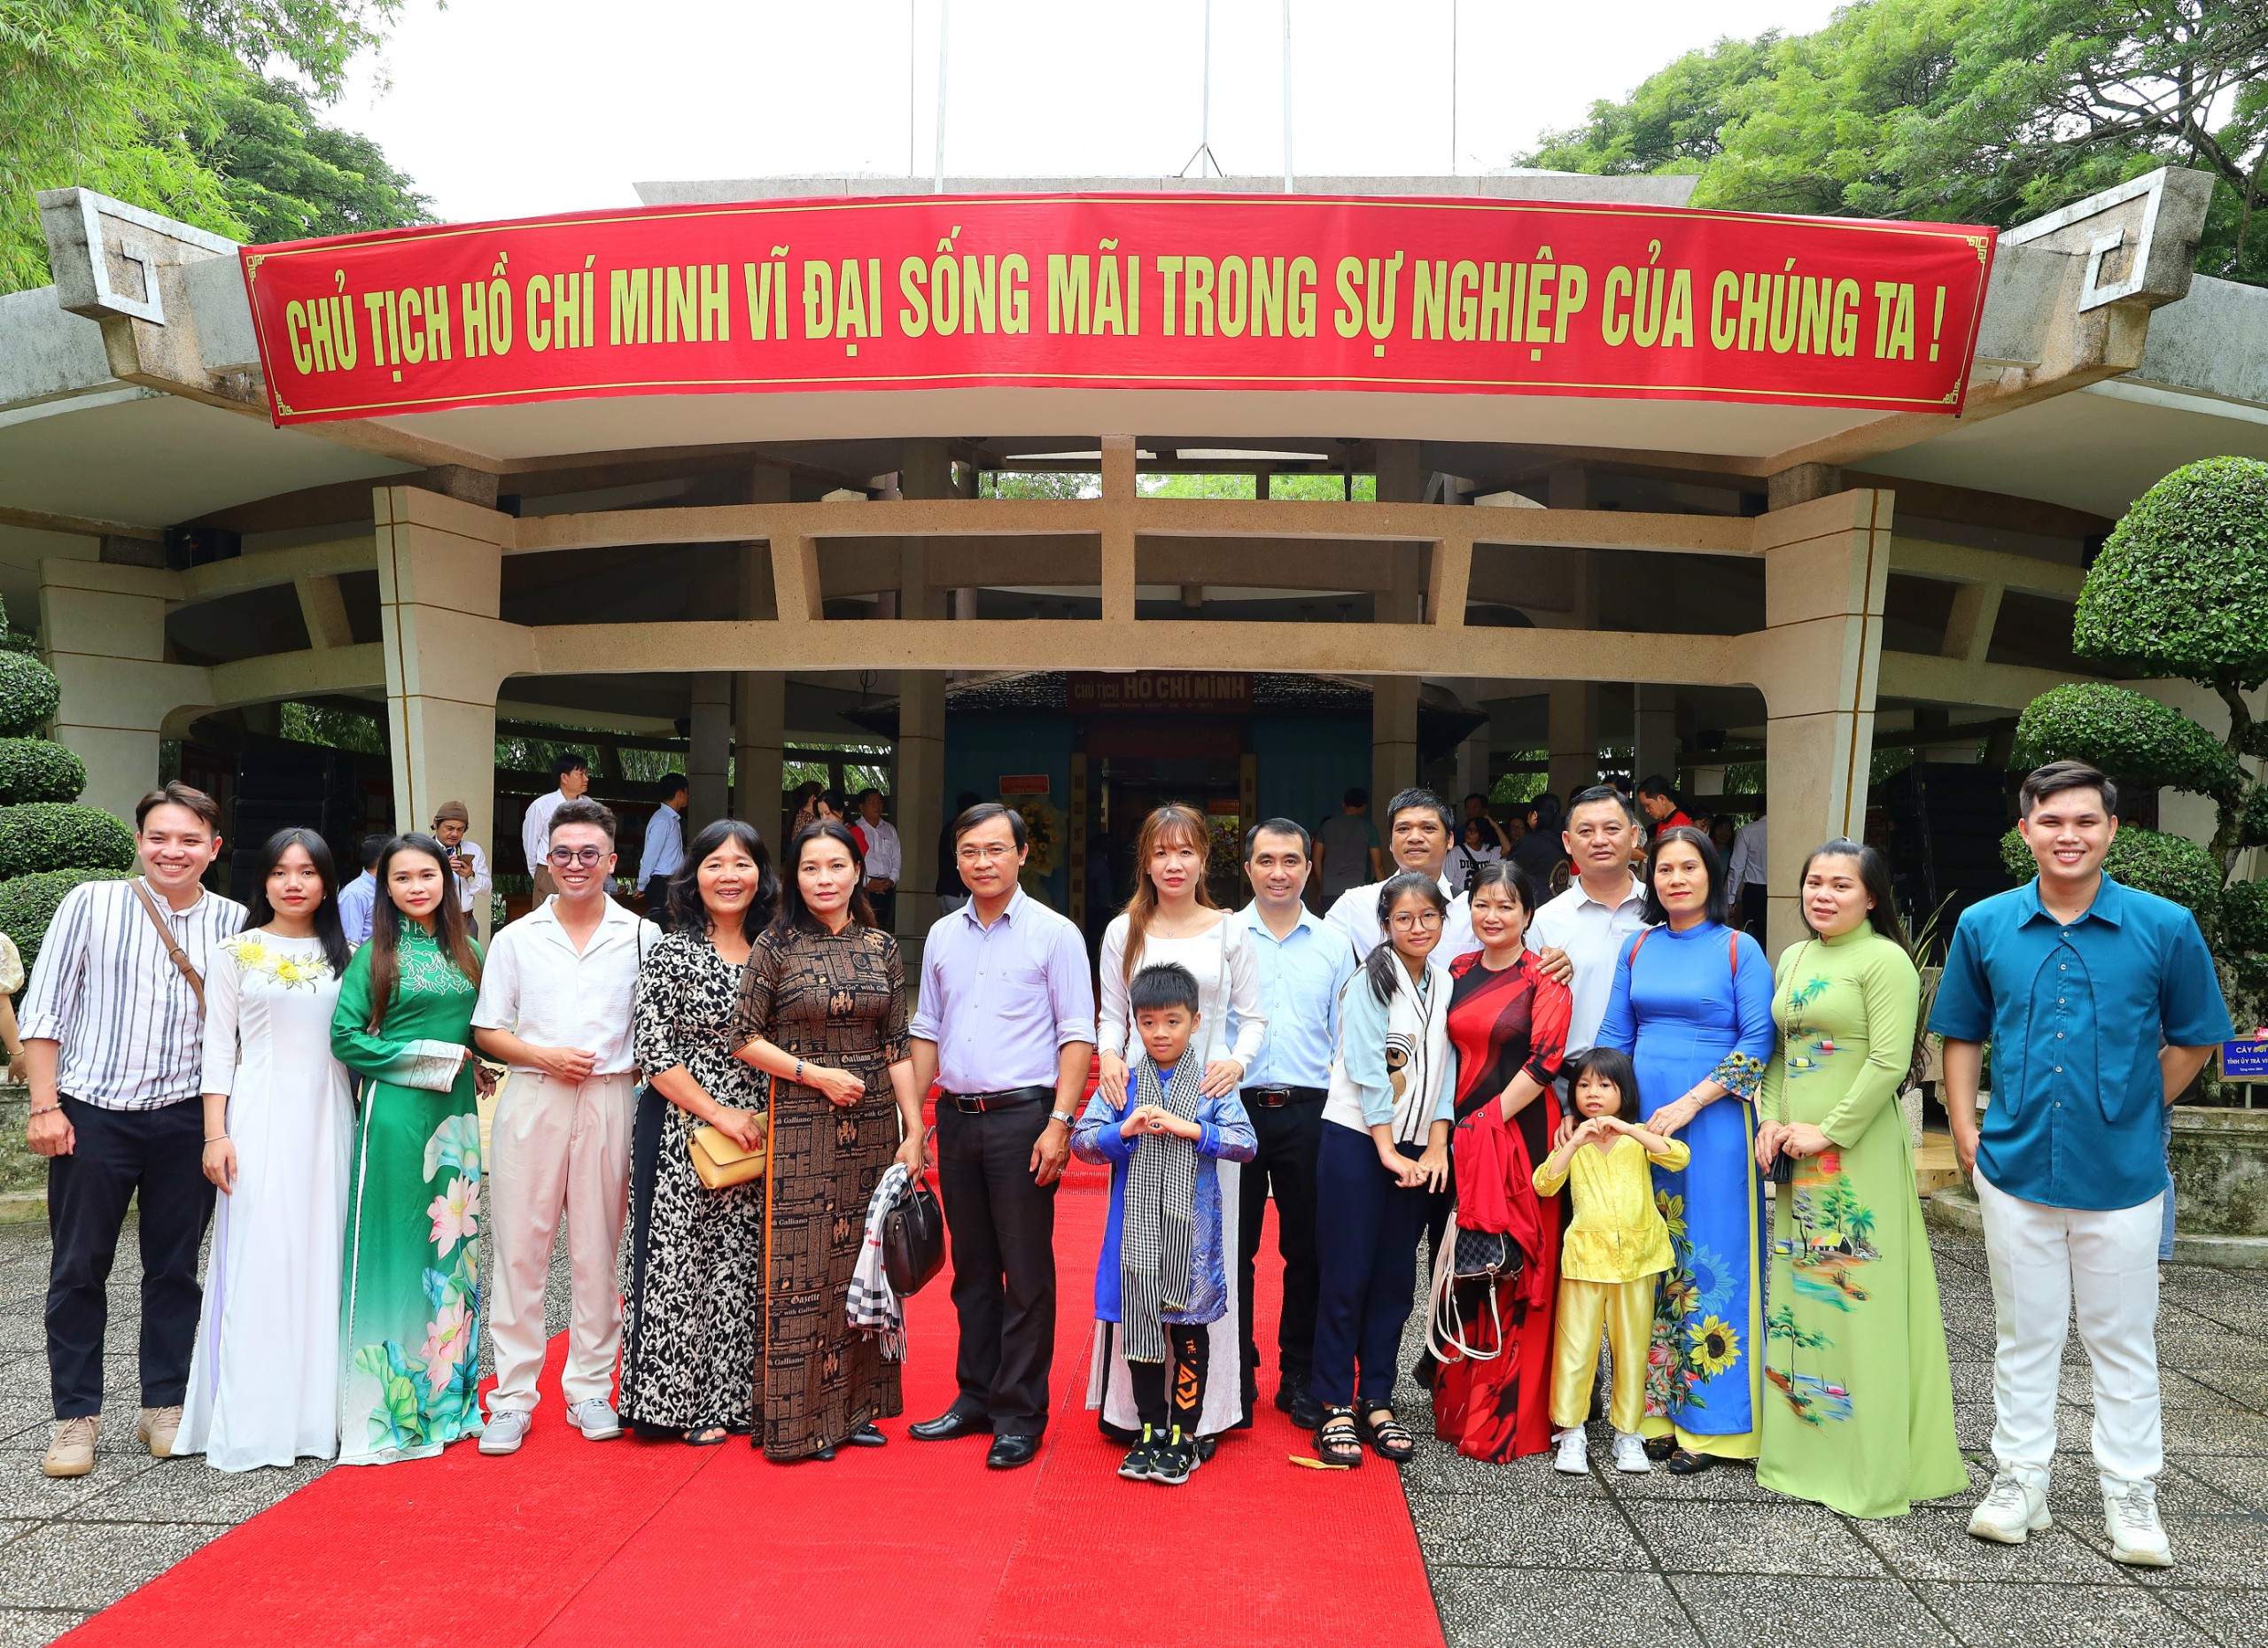 Đoàn TP. Cần Thơ tham gia Ngày hội Gia đình tiêu biểu các tỉnh, thành miền Tây Nam bộ chụp hình lưu niệm tại Đền thờ Bác Hồ.